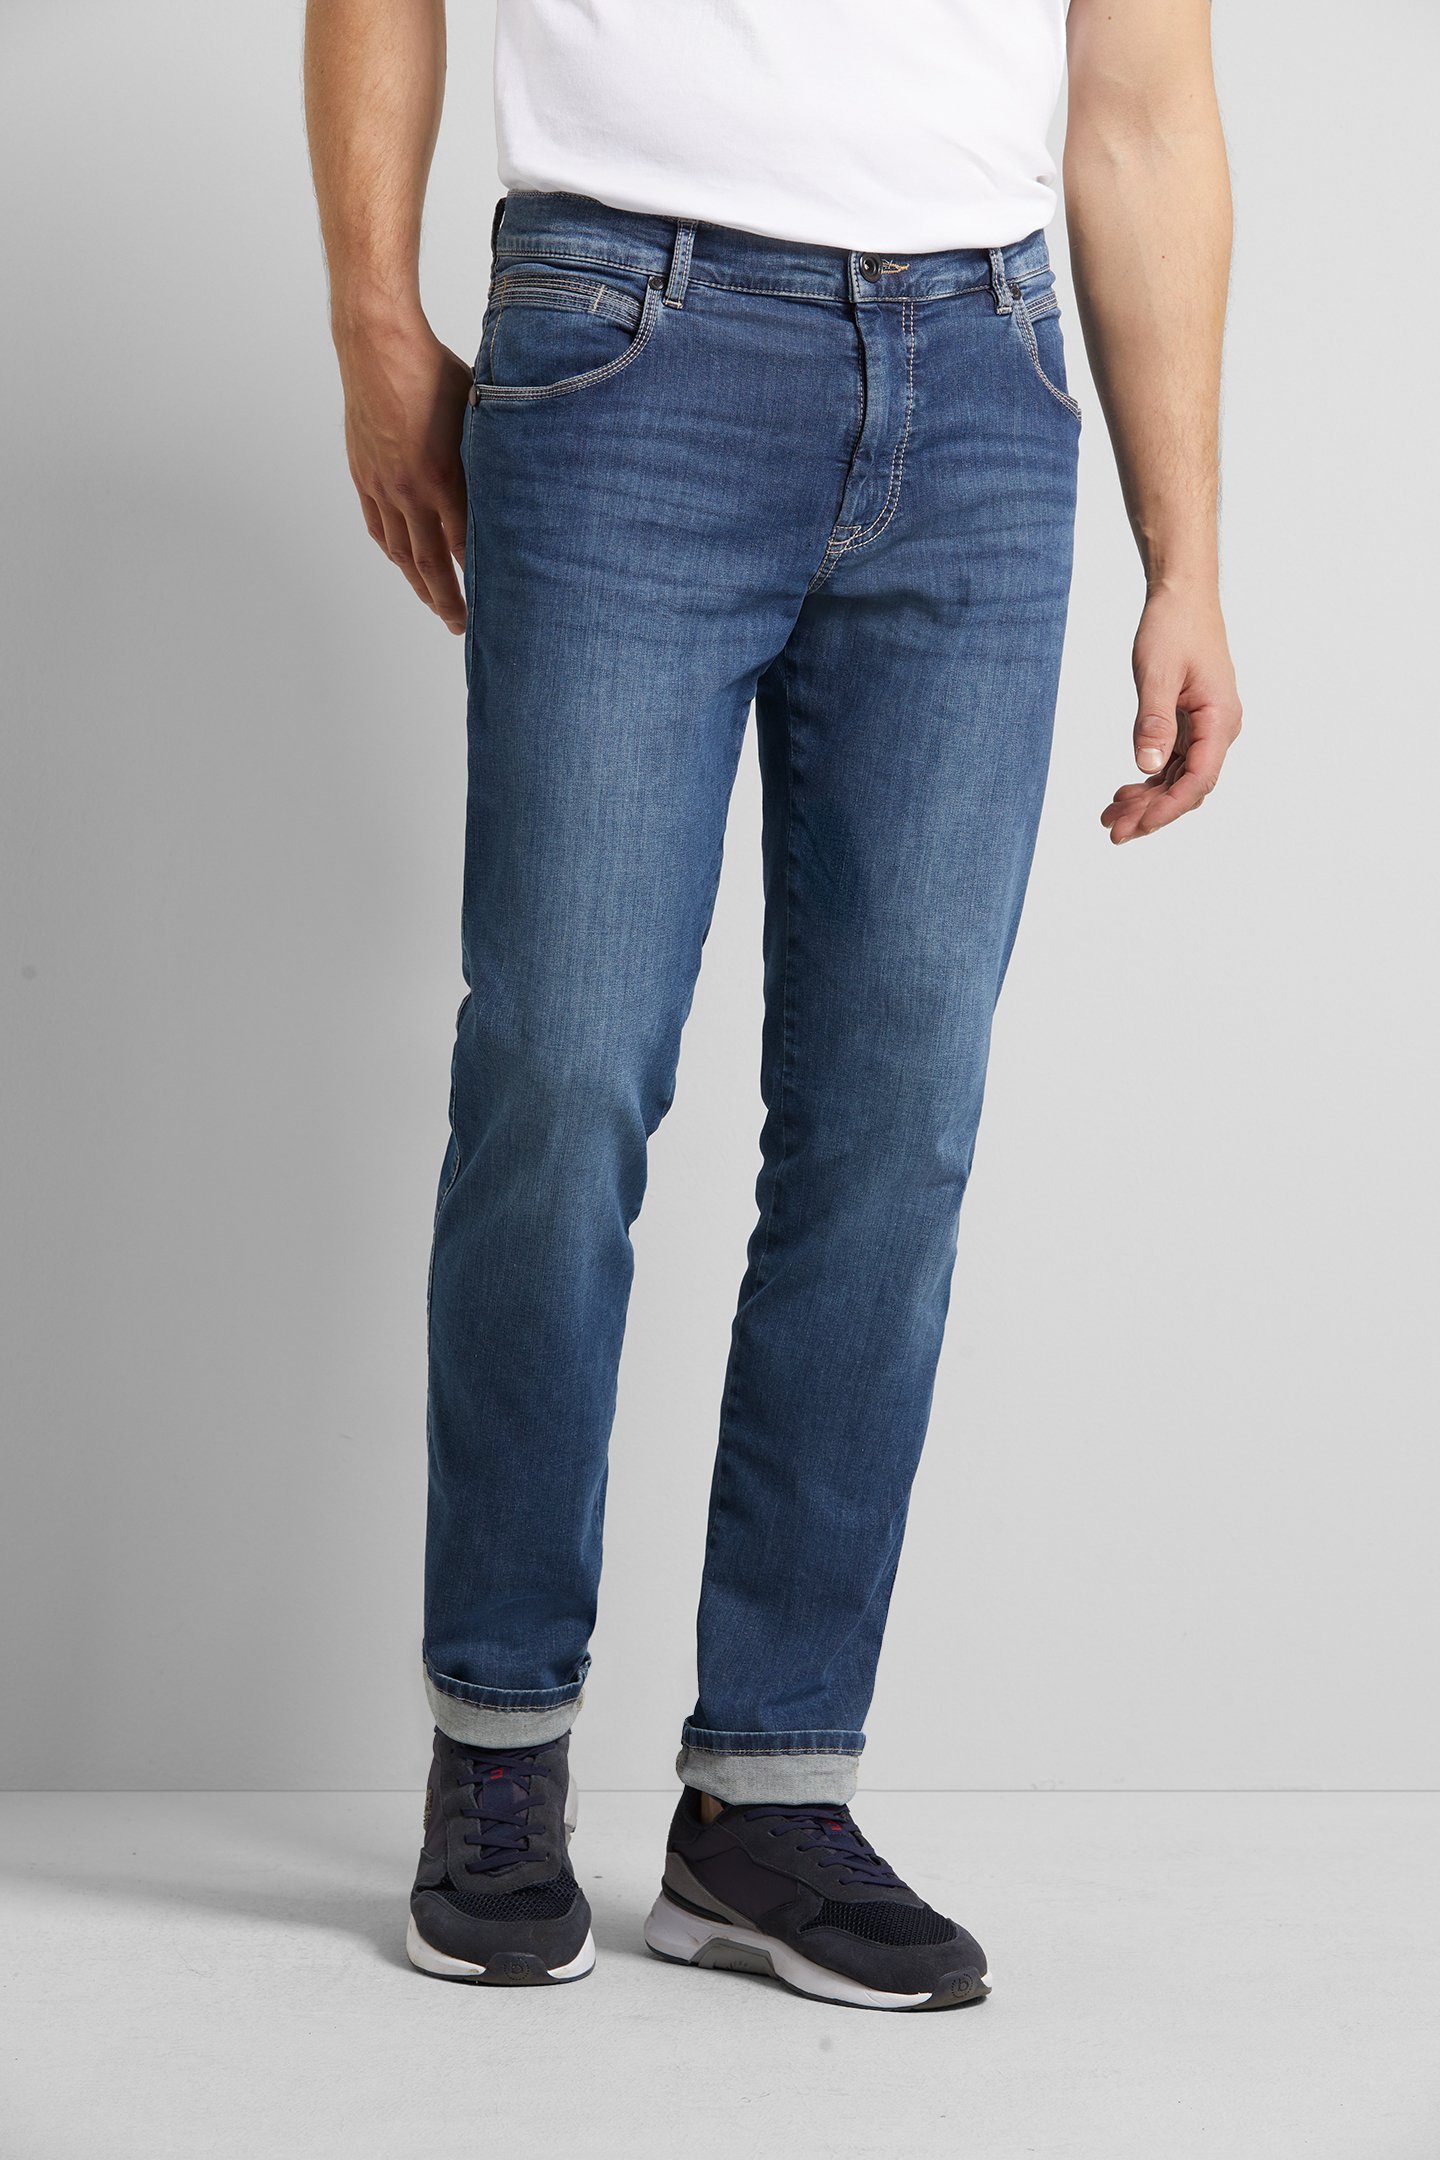 Herren Jeans bugatti 5-Pocket-Jeans mit high performance Stretch